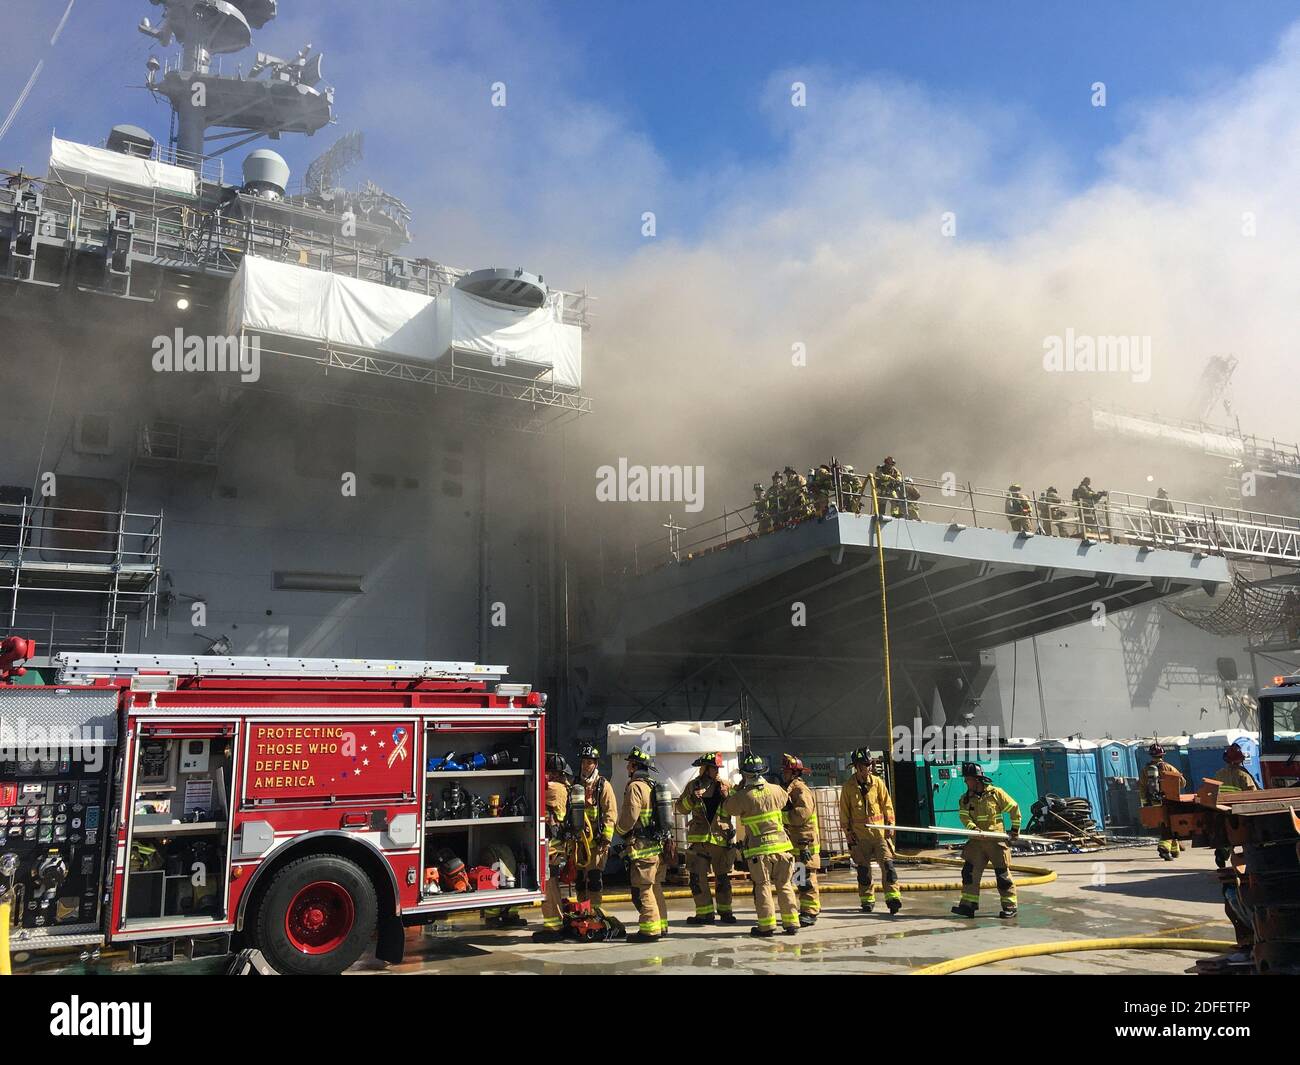 Distribuire la foto dei marinai e dei vigili del fuoco federali San Diego combattere un incendio a bordo della USS Bonhomme Richard (LHD 6) Luglio 12. La mattina del 12 luglio 2020, un incendio è stato allontanato a bordo della nave mentre era ormeggiato in riva al mare alla base navale di San Diego, CA, USA. I vigili del fuoco locali, di base e navali hanno risposto all'incendio. La USS Bonhomme Richard sta attraversando una fase di manutenzione, iniziata nel 2018. U.S. Navy Photo by Mass Communication Specialist 1st Class Jason Kofonow via ABACAPRESS.COM Foto Stock